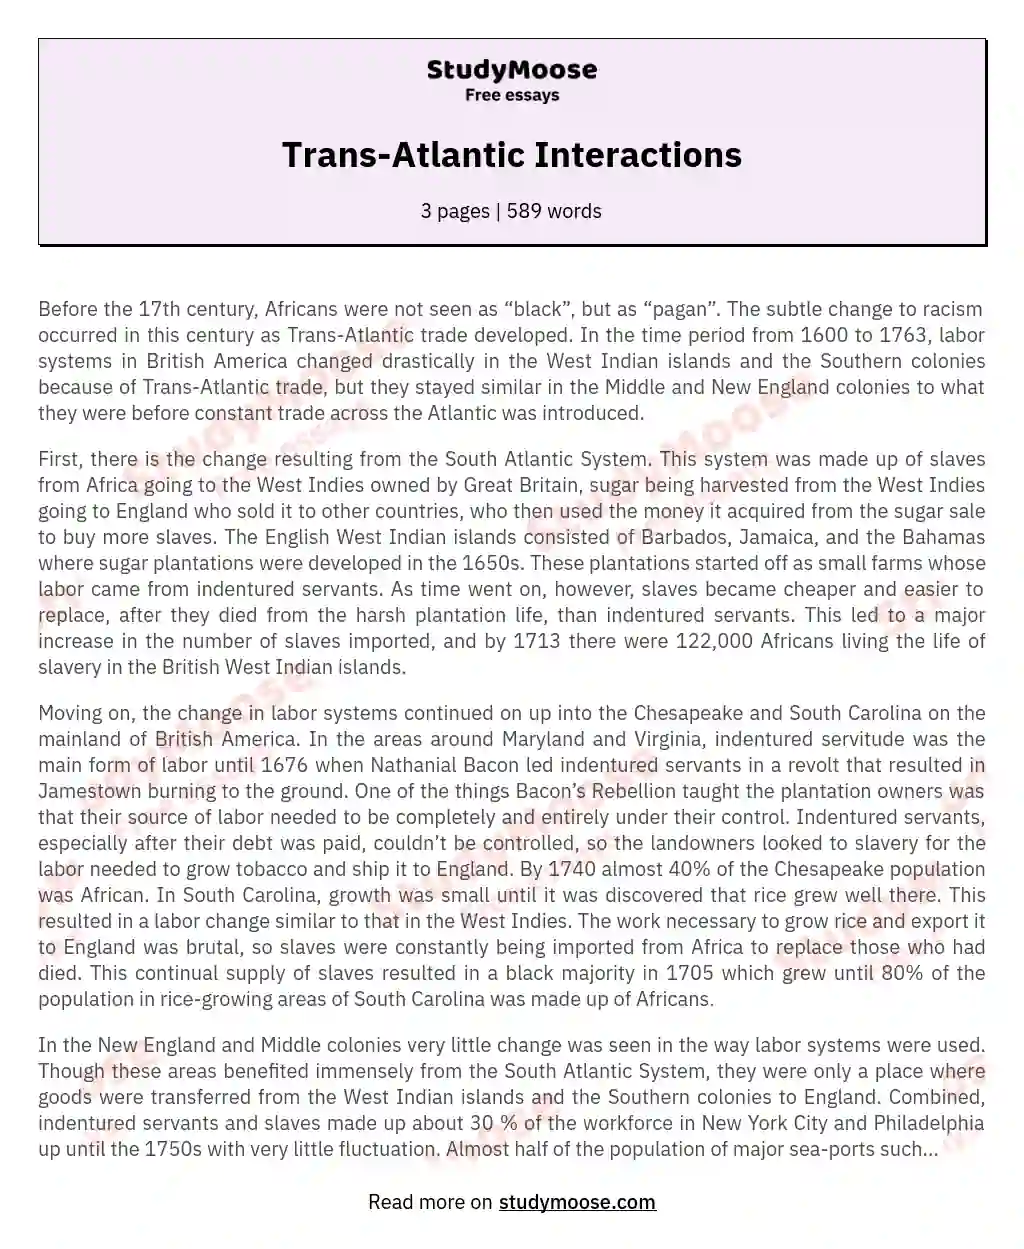 Trans-Atlantic Interactions essay